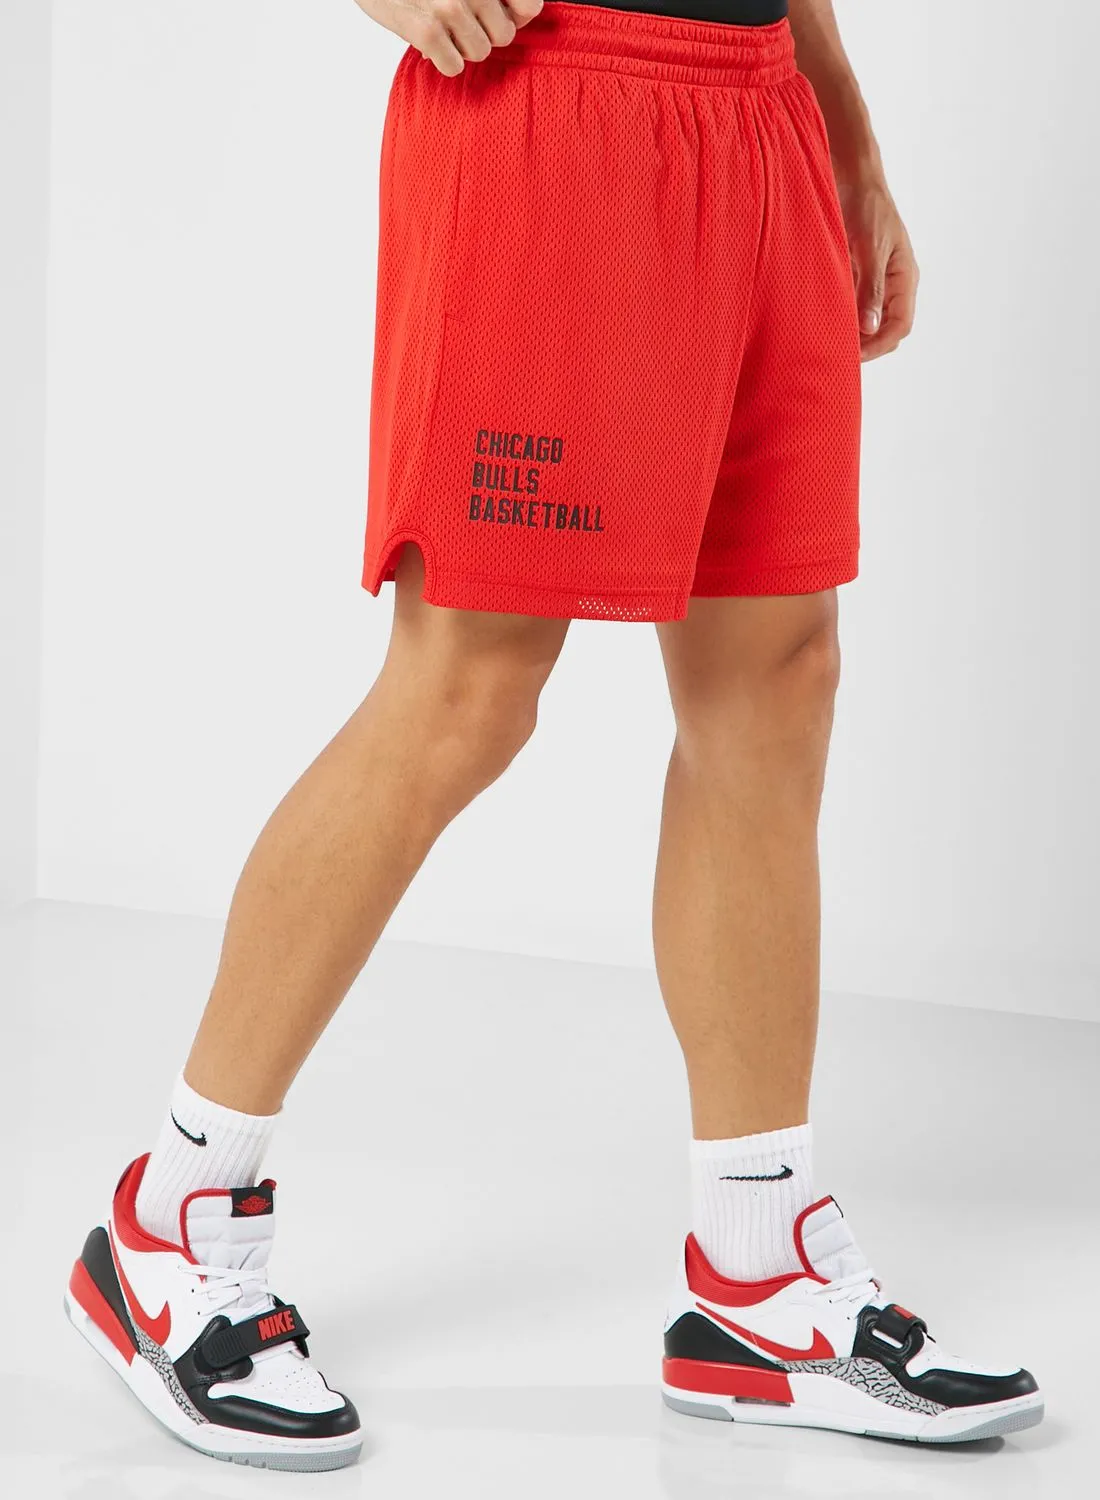 Nike Chicago Bulls Openhole Shorts